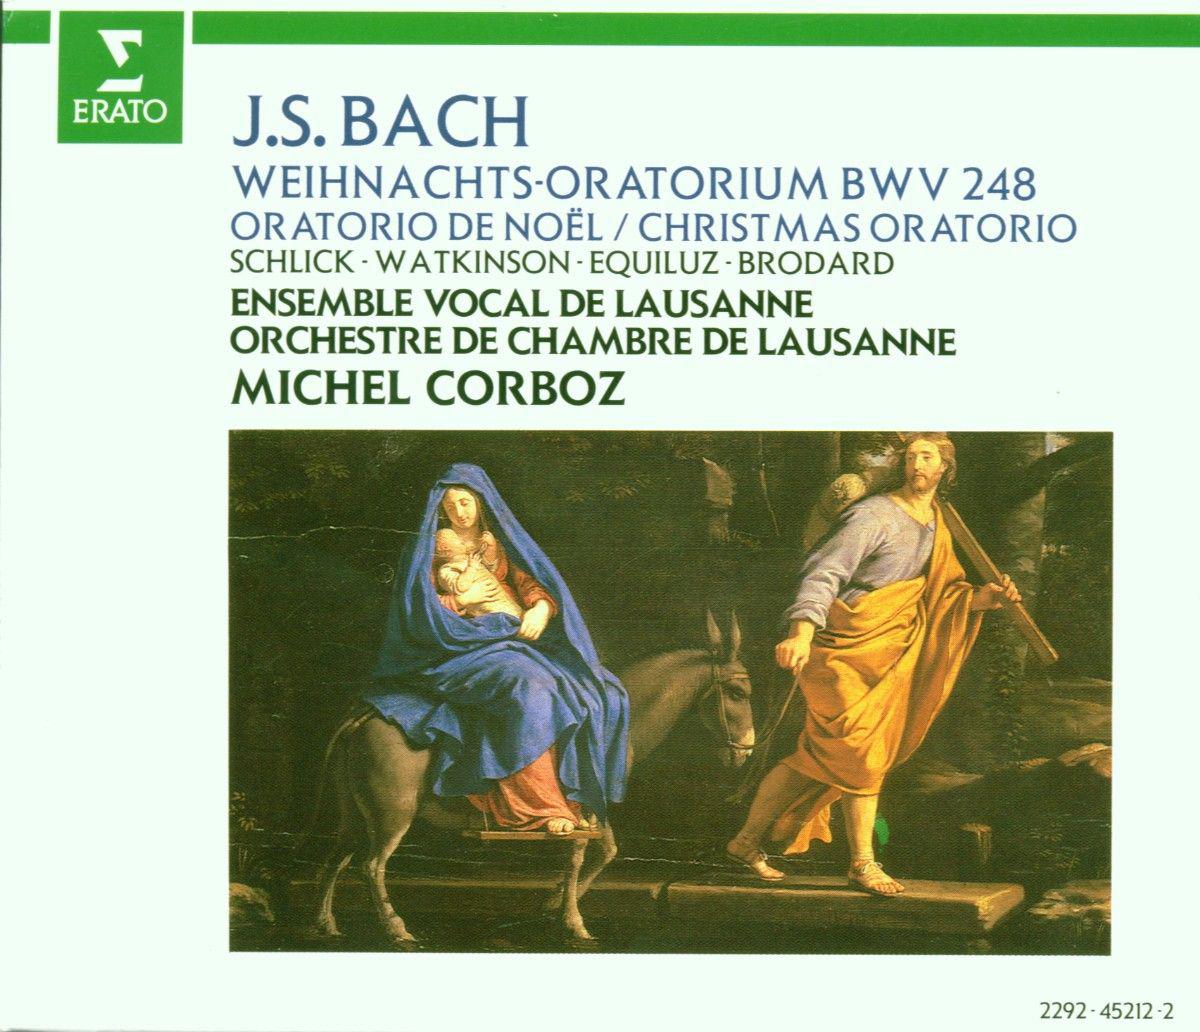 Weihnachtsoratorium, BWV 248, Pt. 5:No. 43, Chor. "Ehre sei dir, Gott, gesungen"